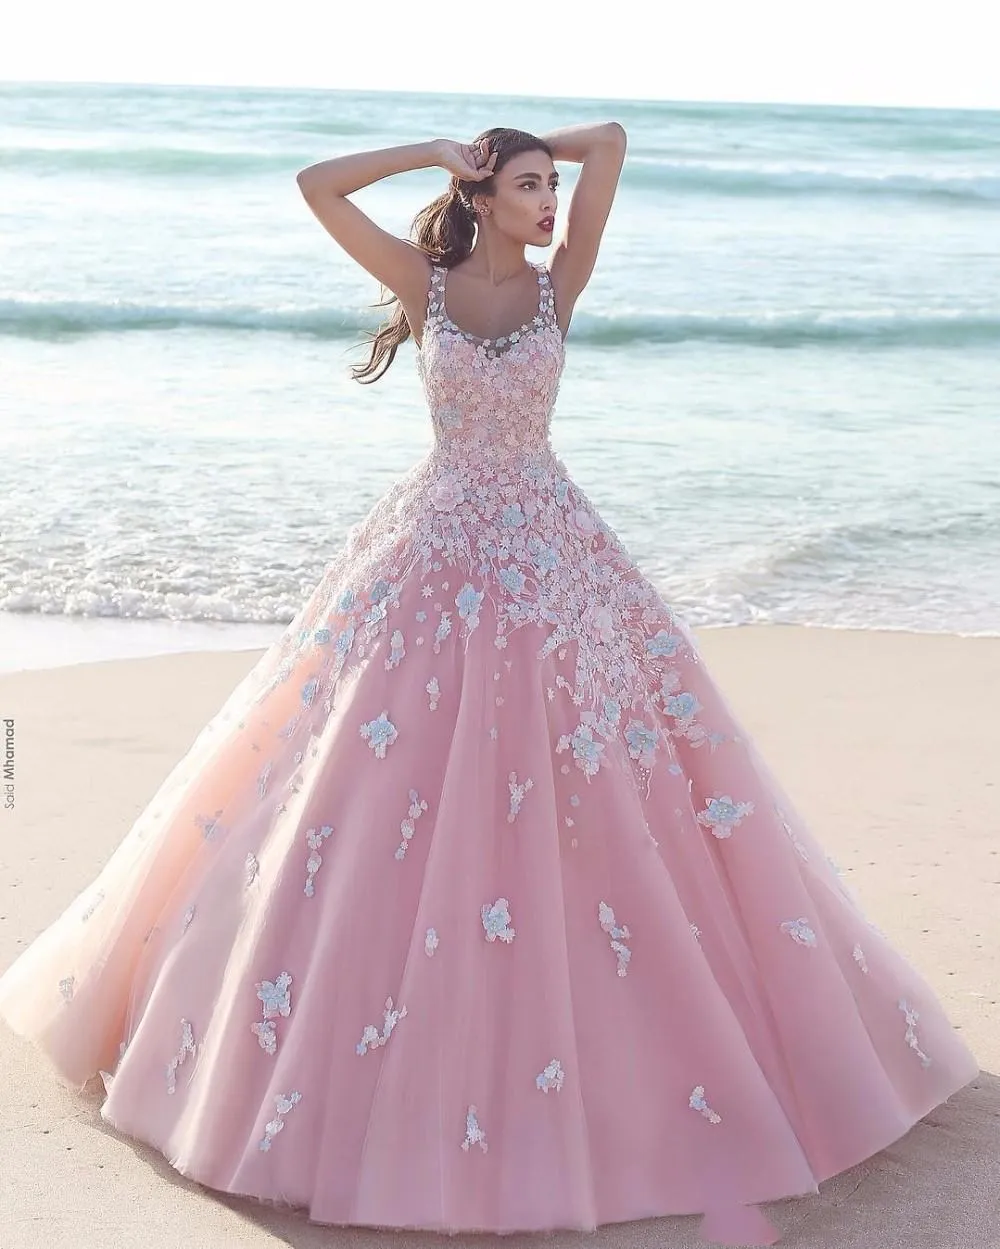 Prenses Çiçek Çiçek Pembe Balo Quinceanera Elbiseler Aplike Tül Scoop Kolsuz Dantel Korse Uzun Gelinlik Modelleri Örgün Parti